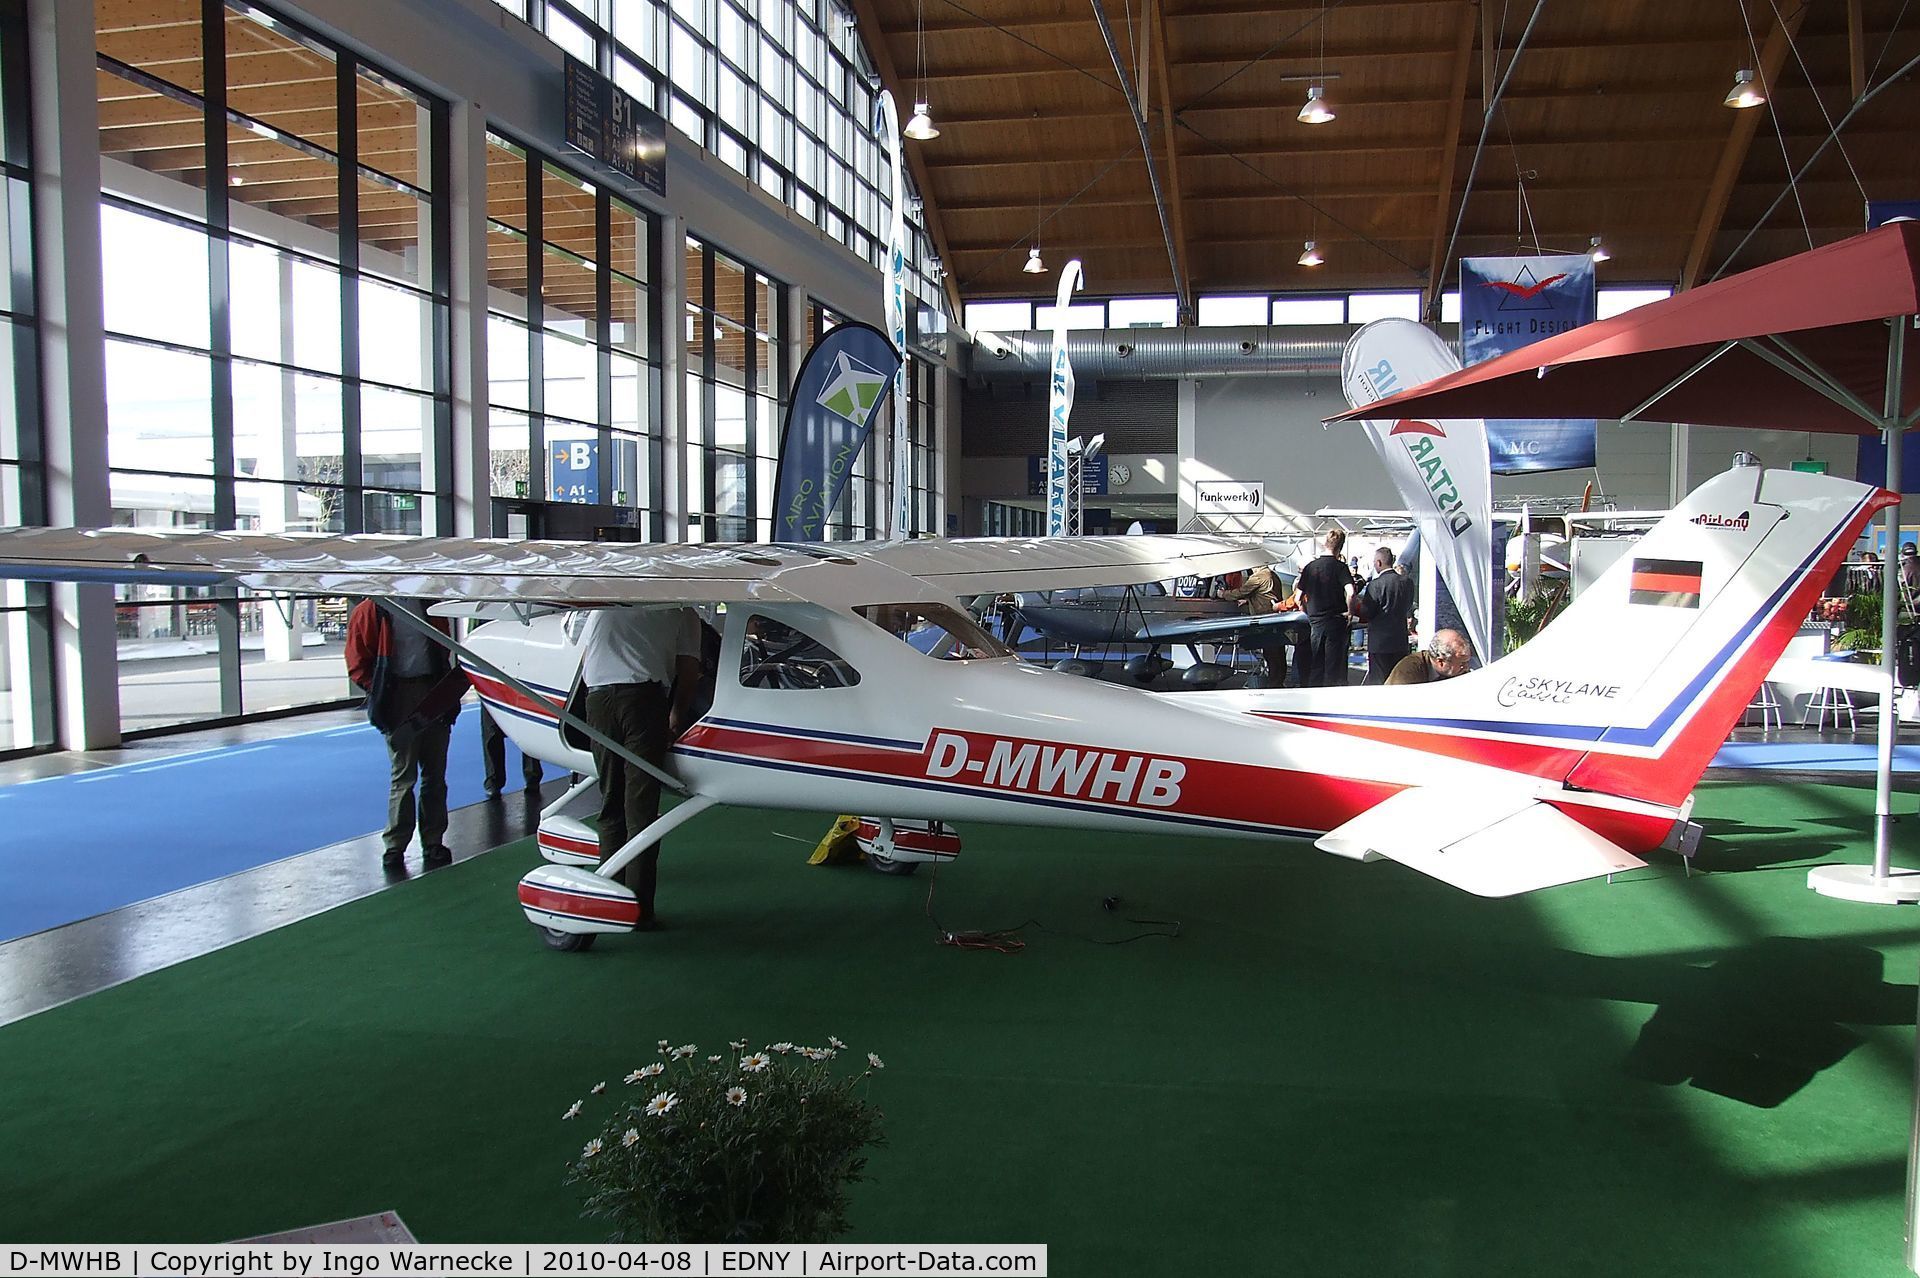 D-MWHB, AirLony Skylane Classic C/N 021129, Airlony Skylane Classic at the AERO 2010, Friedrichshafen